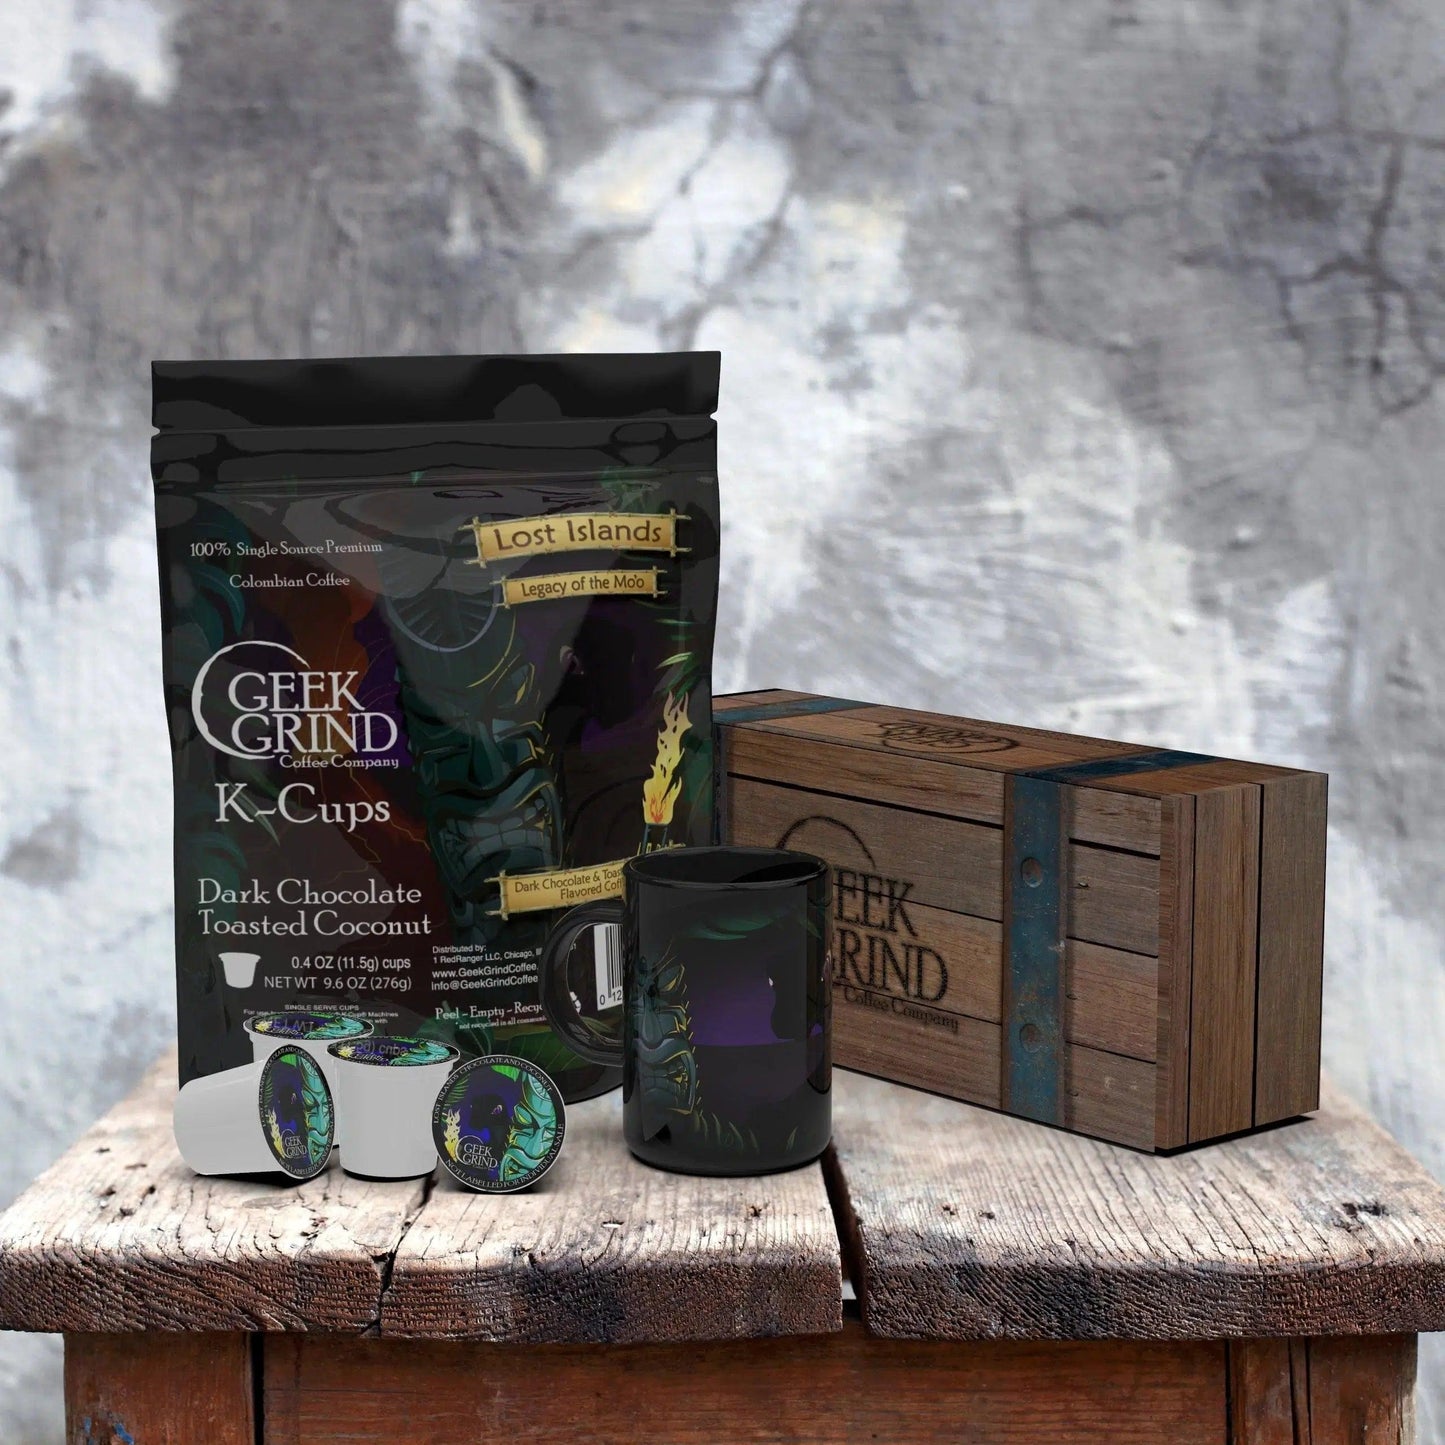 Lost Islands Dark Chocolate & Coconut Flavor K-Cups - Geek Grind Coffee